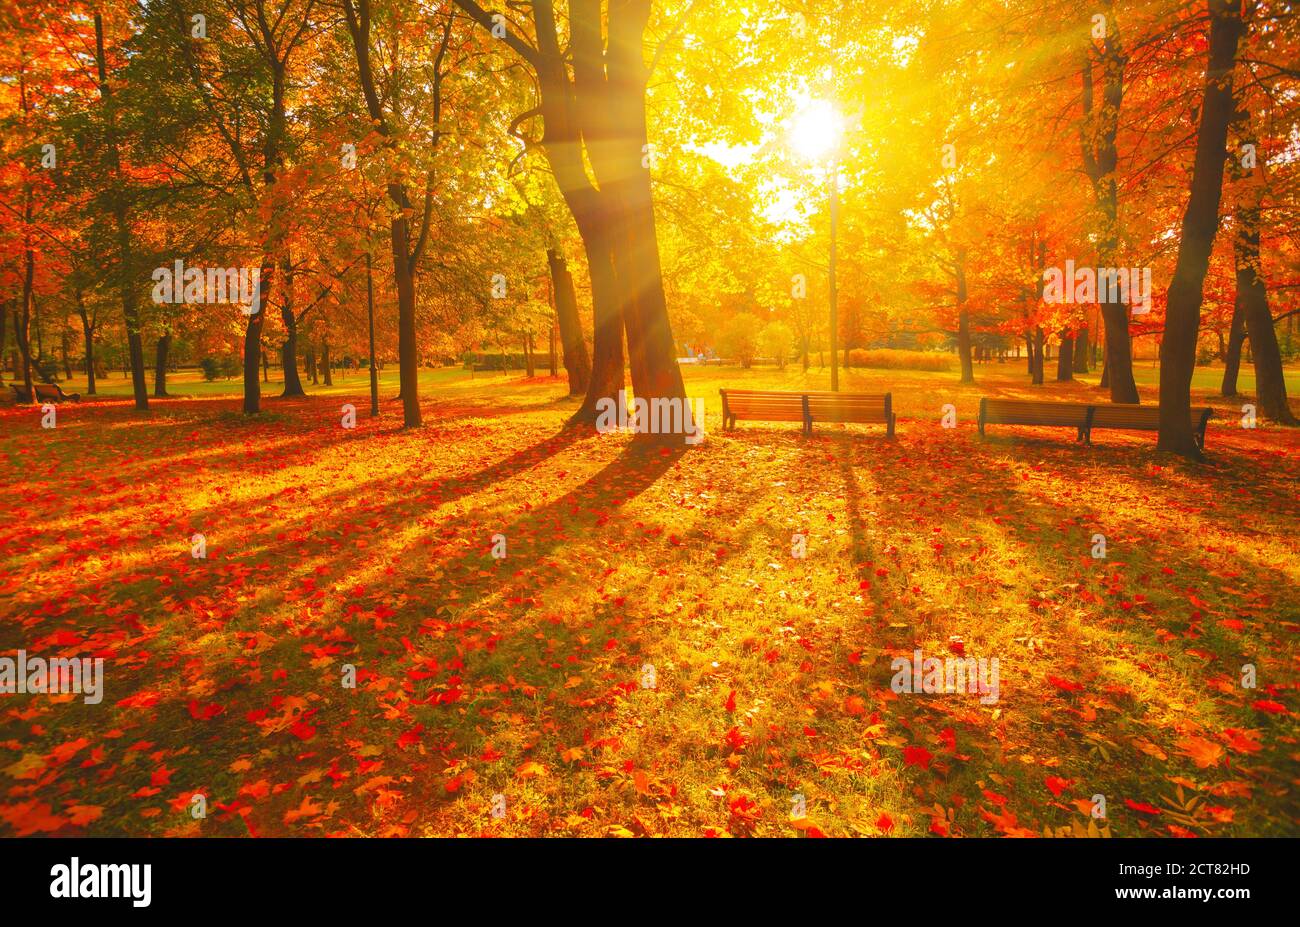 Camino de otoño. Árbol de color naranja, hojas de arce marrón rojo en el parque de la ciudad de otoño. Escena en la niebla puesta de sol Banco de madera en el paisaje escénico sol brillante, vista de día soleado. Foto de stock